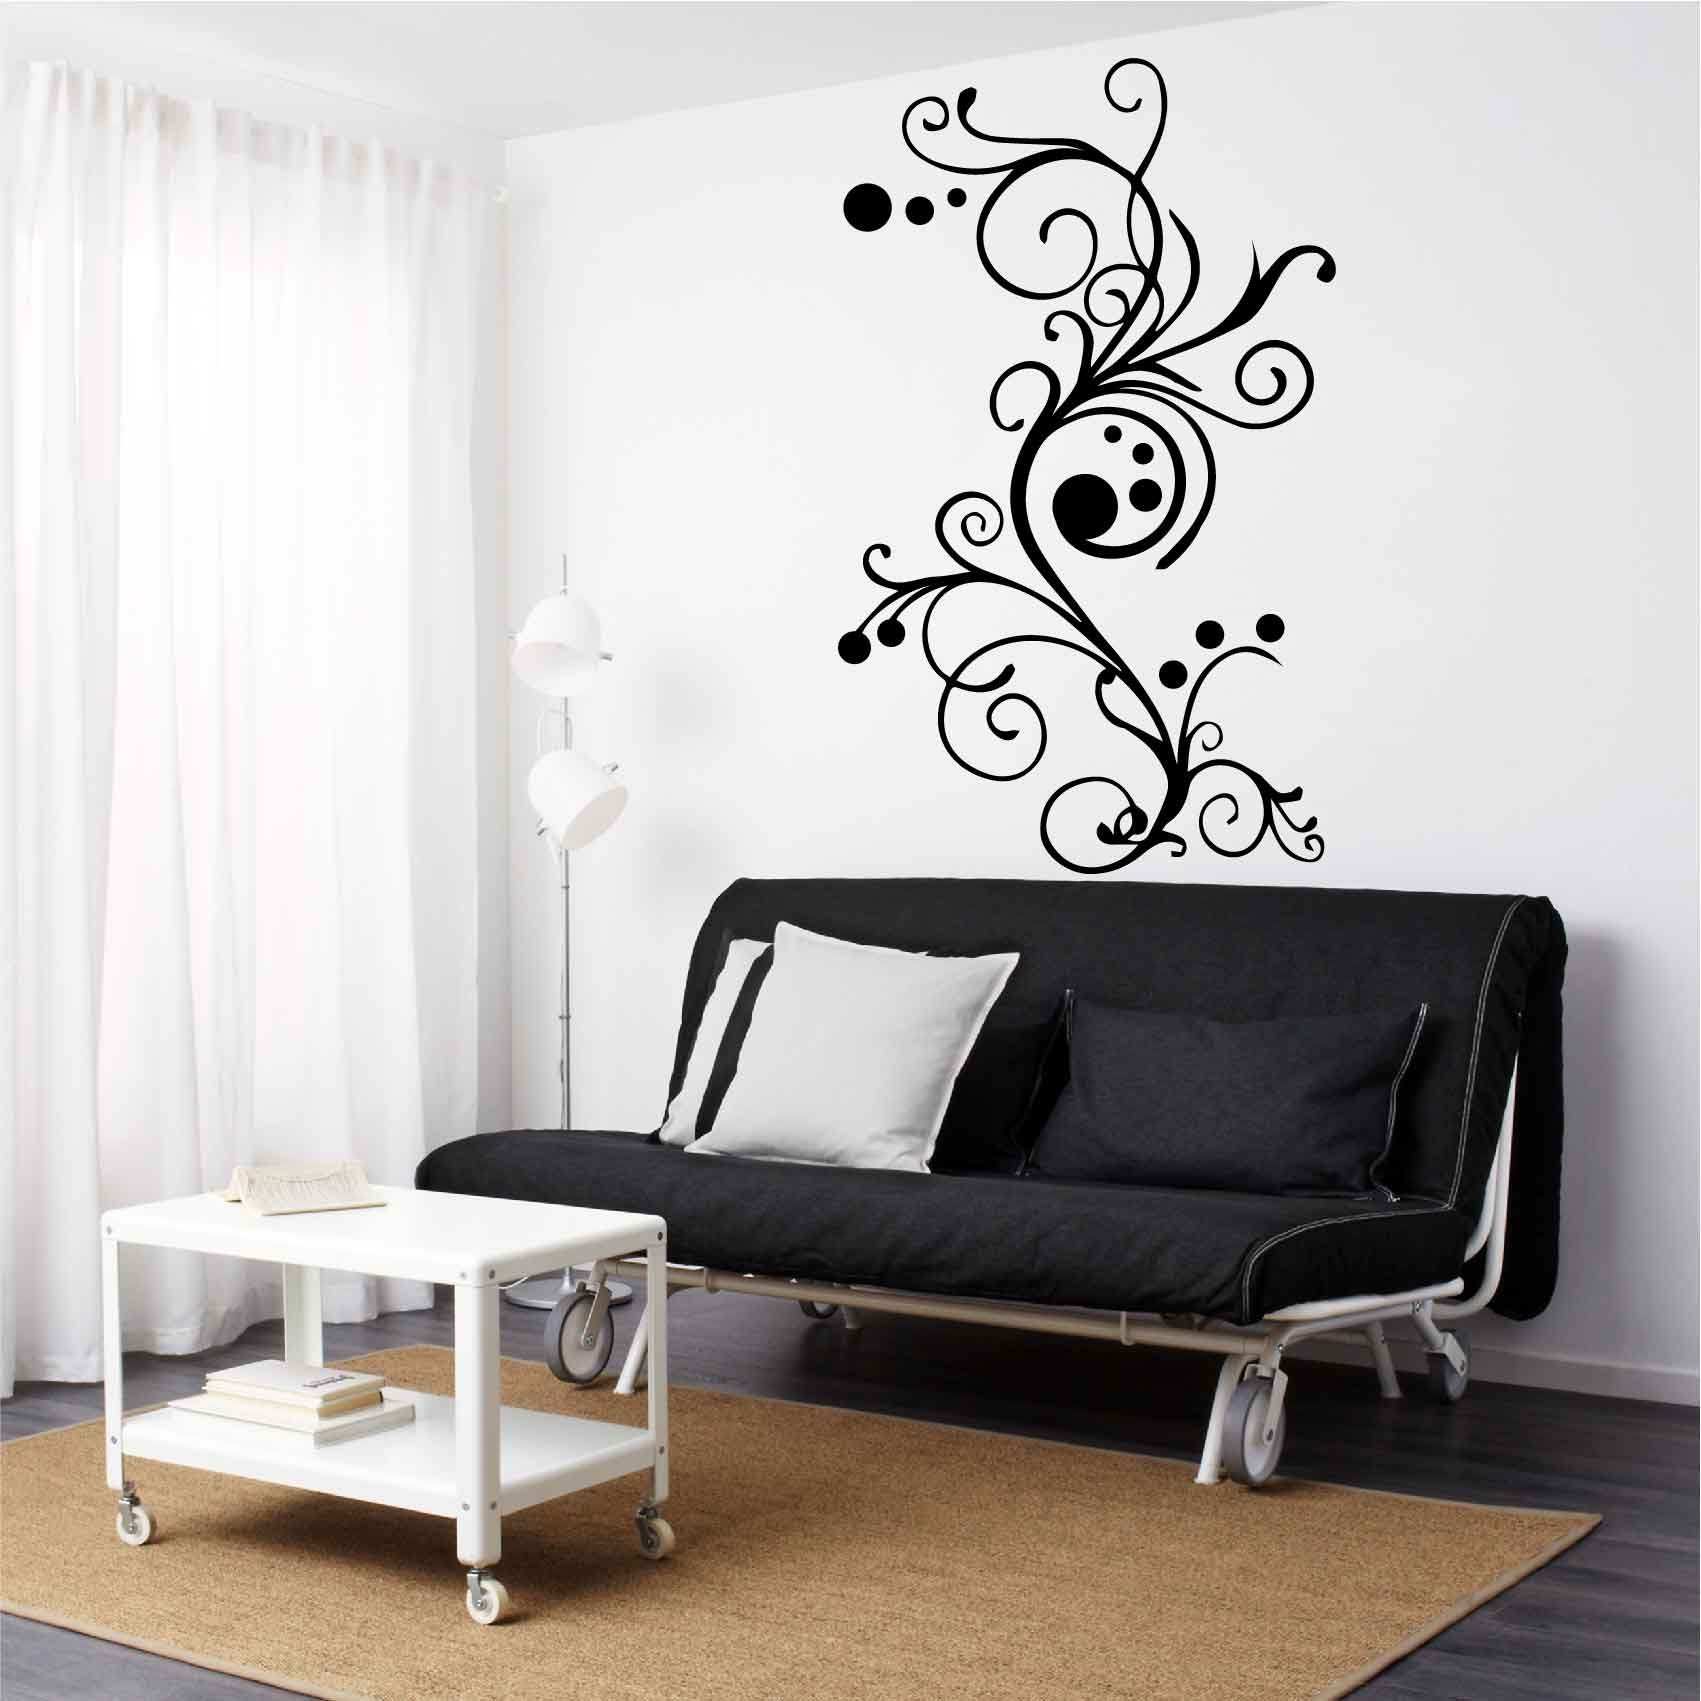 stickers-arabesque-simple-ref1arabesque-autocollant-muraux-arabesques-salon-sticker-mural-deco-design-forme-chambre-séjour